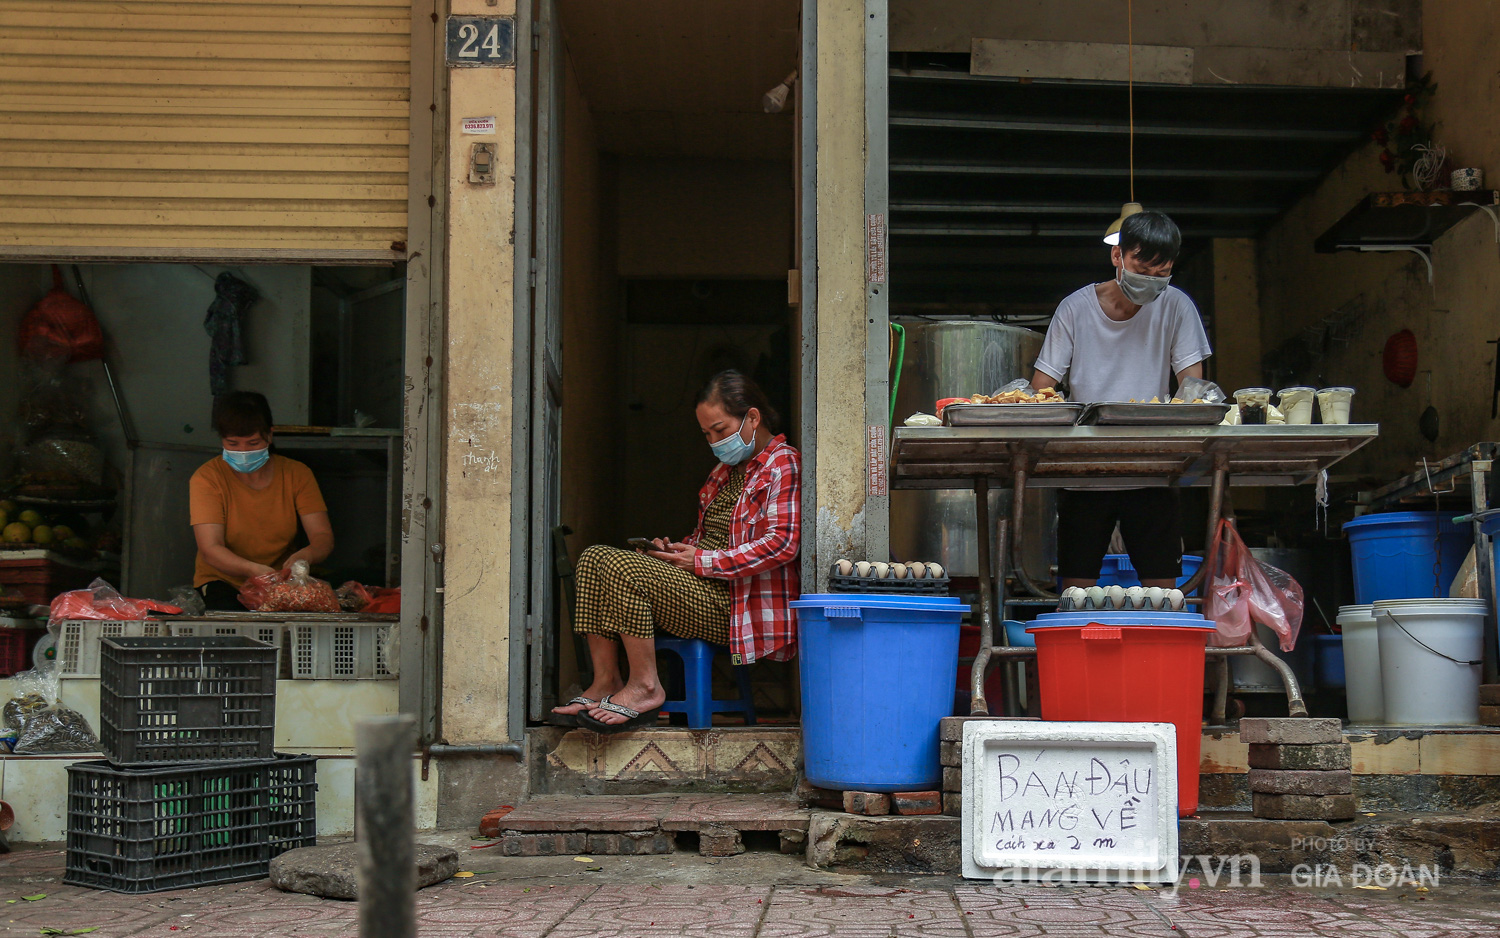 "Bỏ tiền vào xô, lấy đồ ở chậu", cách các tiểu thương tại một khu chợ ở Hà Nội chung tay phòng chống dịch COVID-19